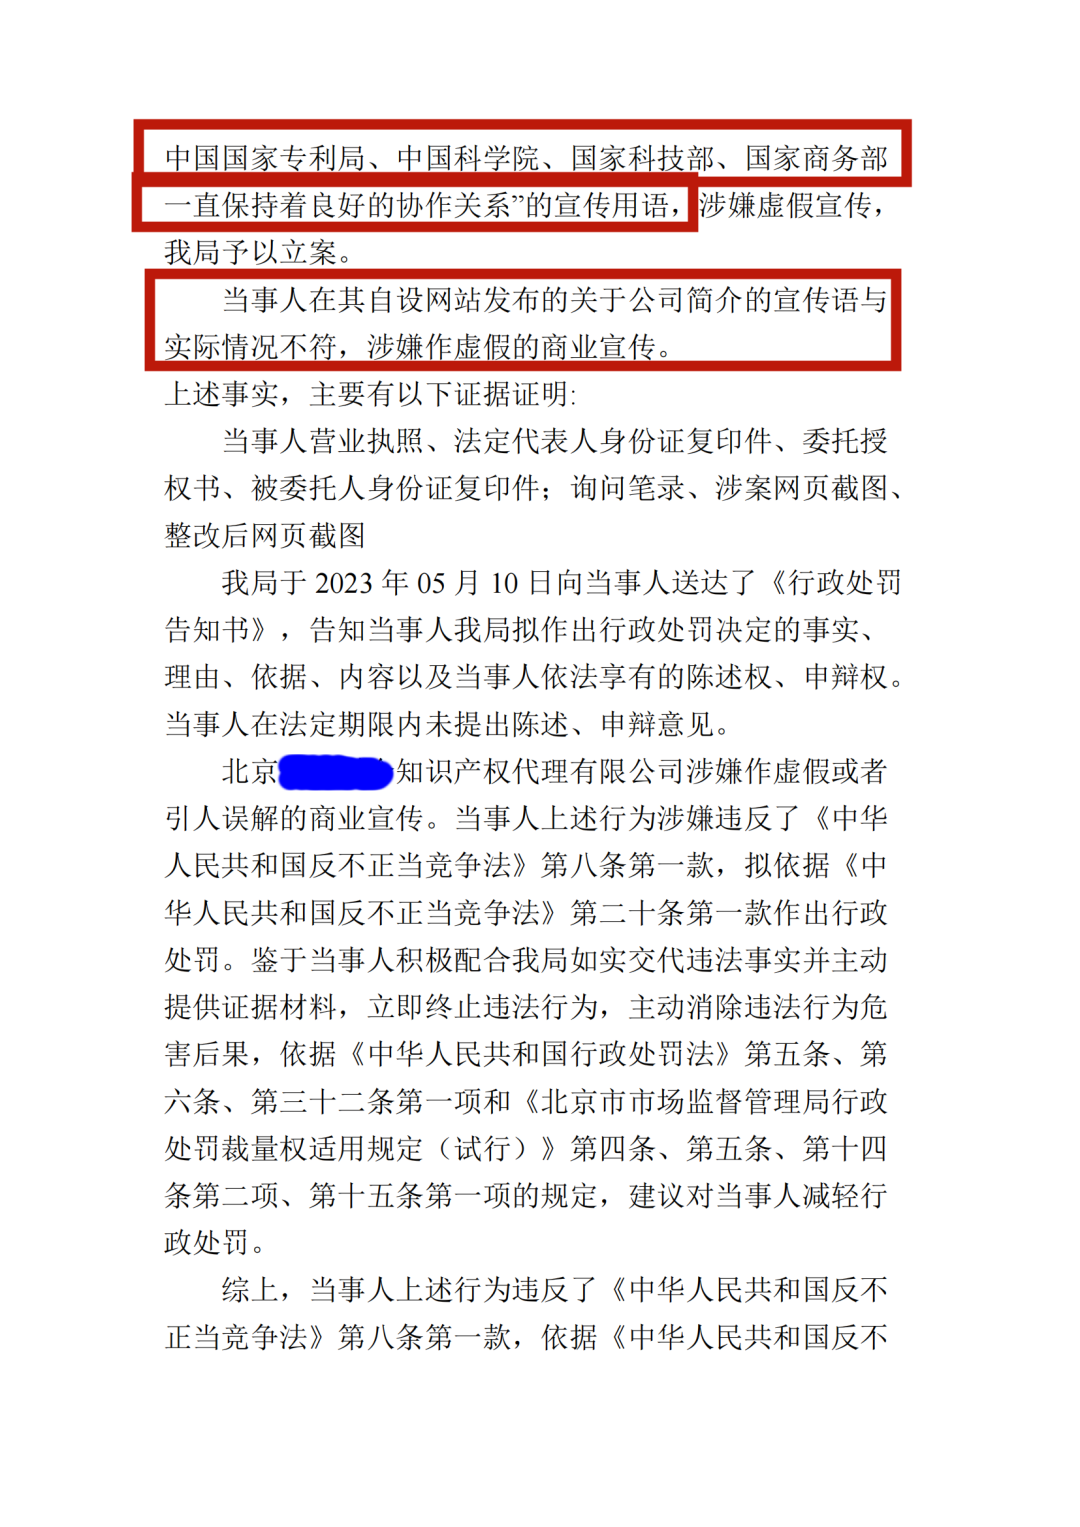 涉嫌虚假宣传！北京一代理机构被罚5万元